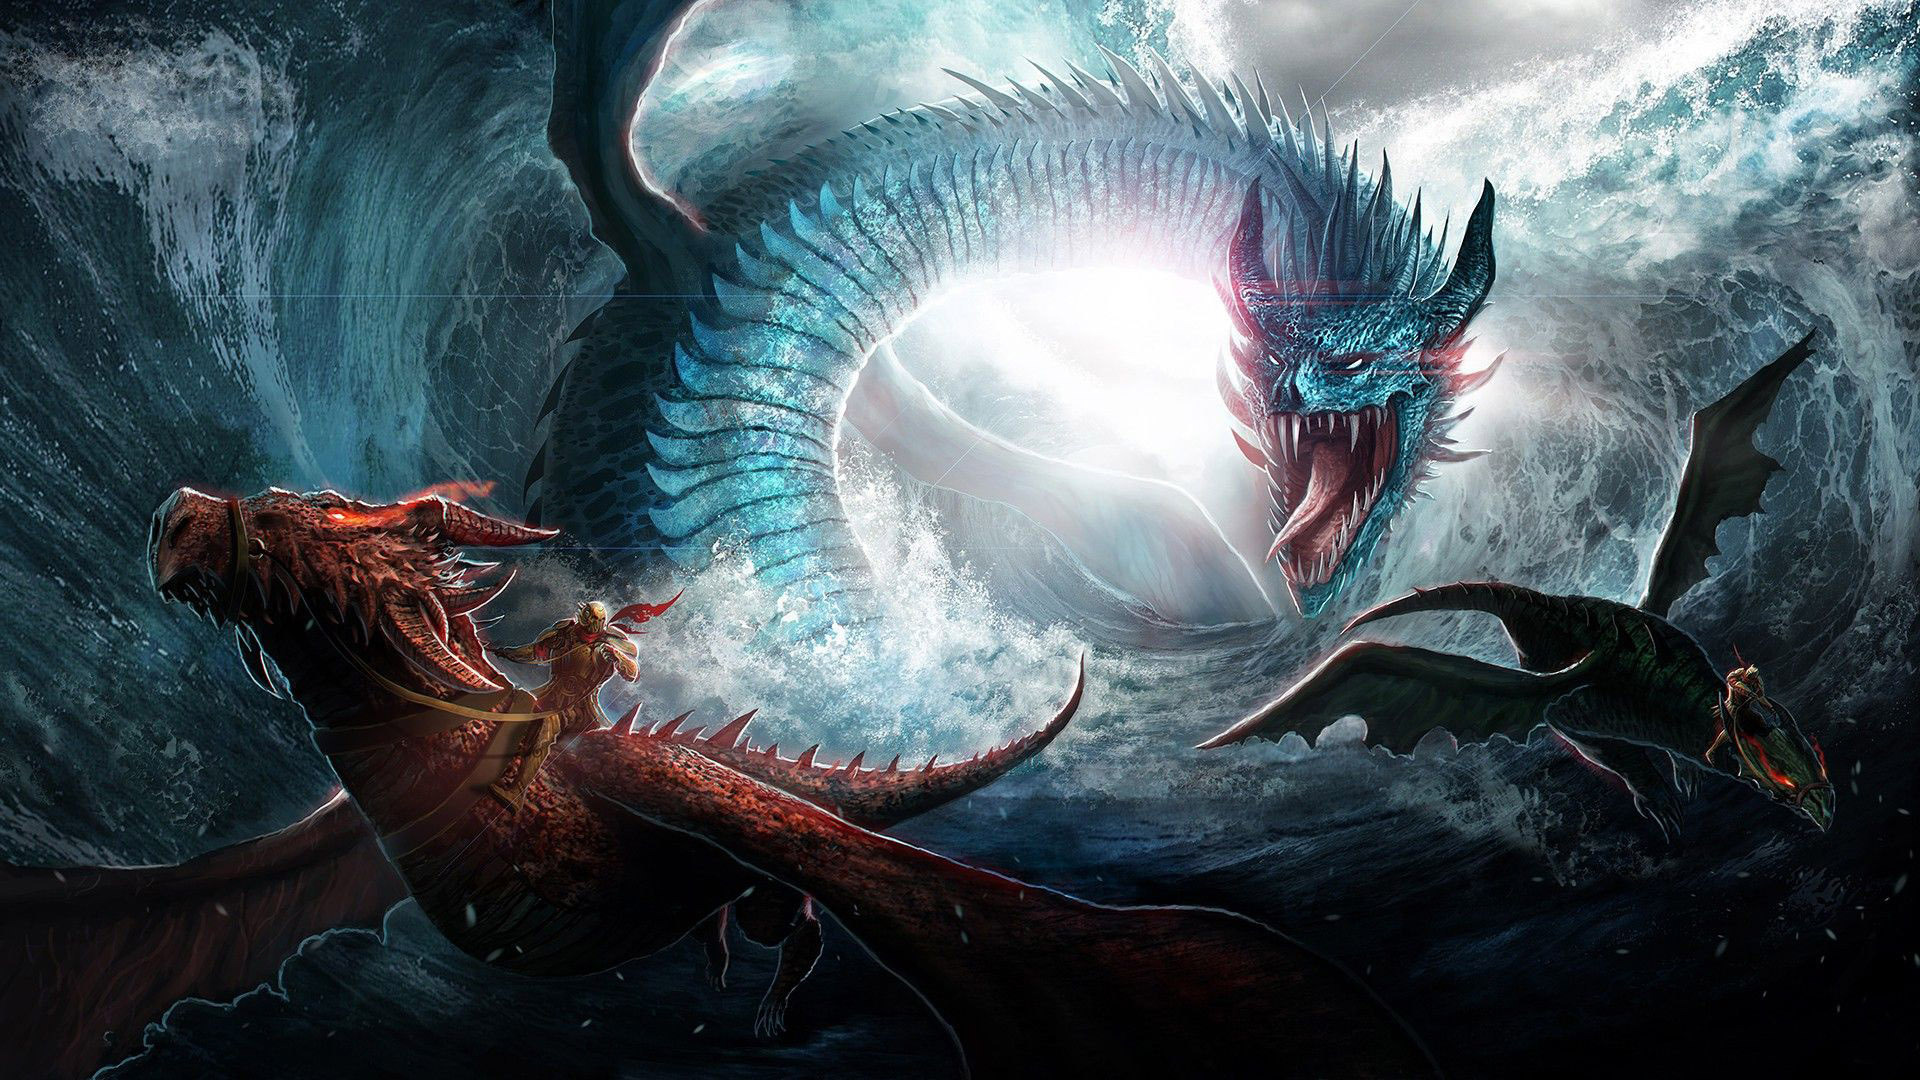 fond d'écran de dragon pour android,dragon,oeuvre de cg,mythologie,personnage fictif,créature mythique